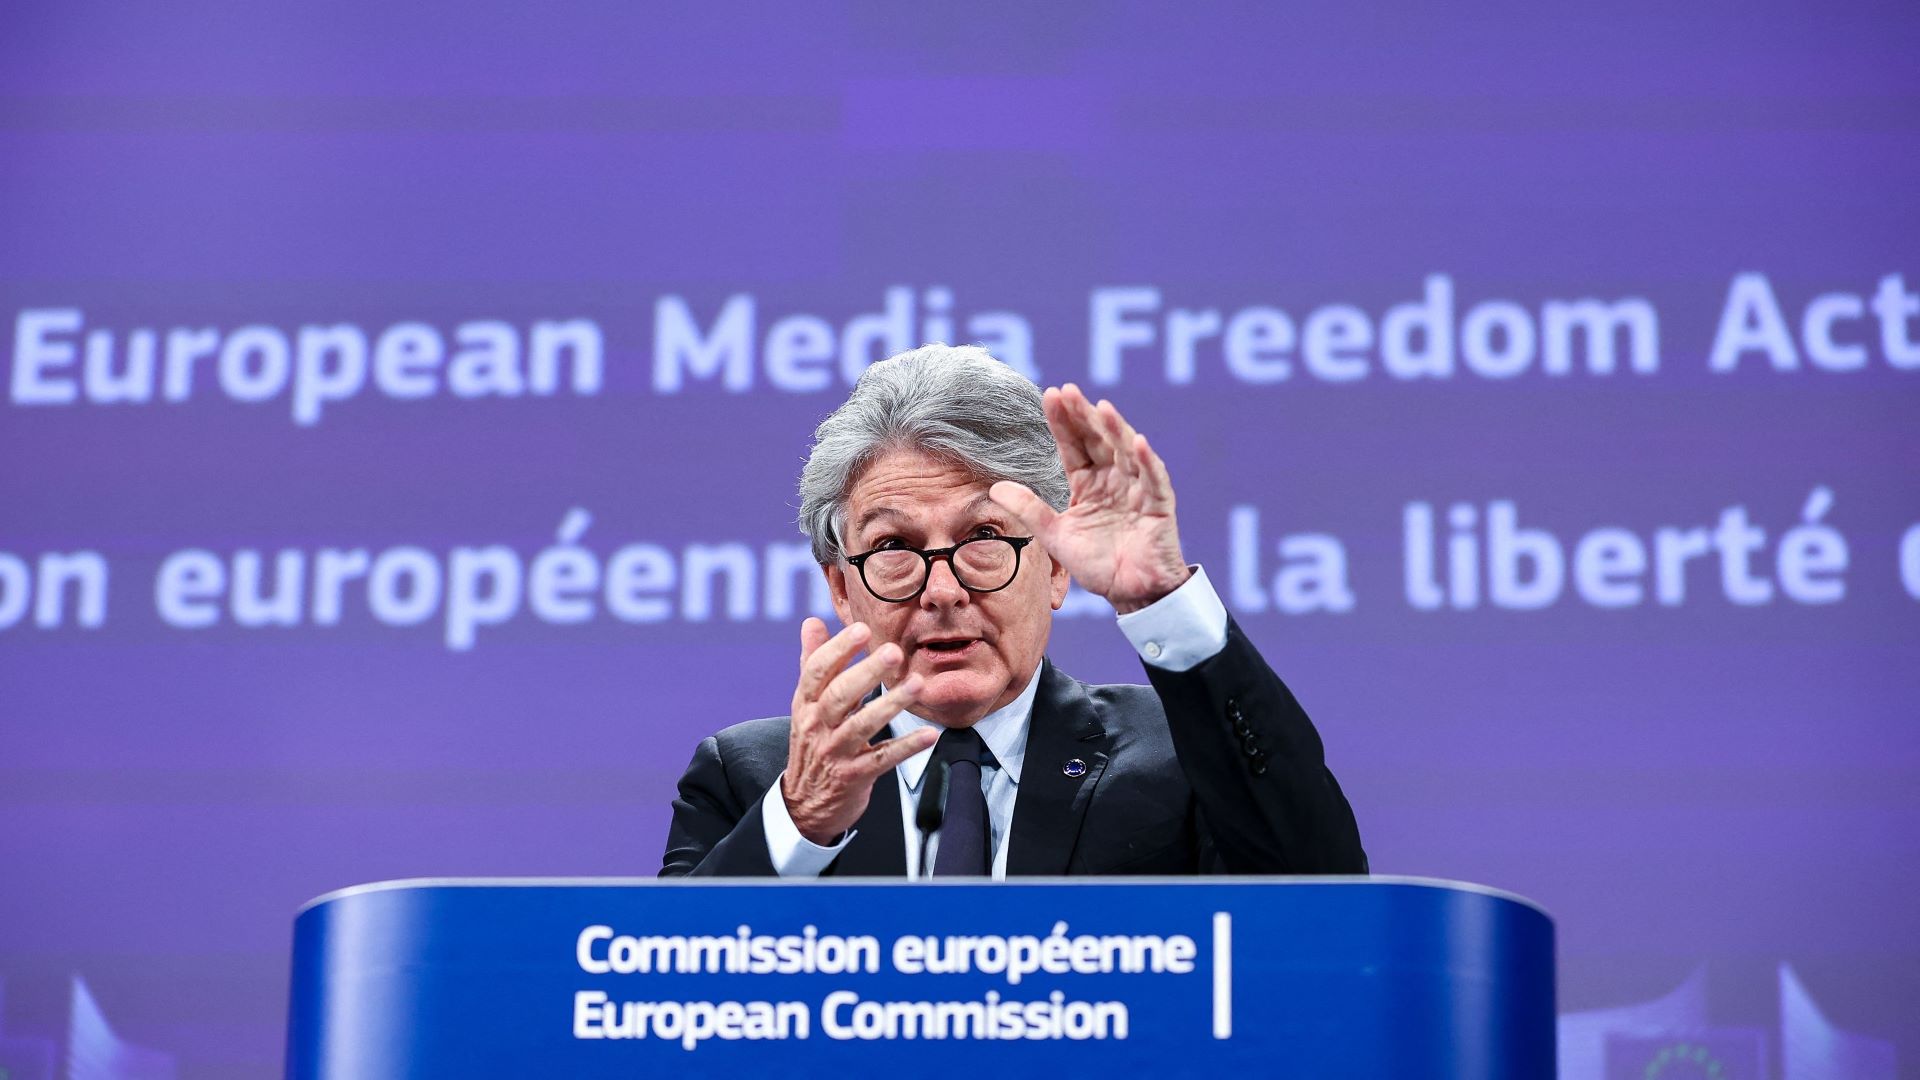 قانون آزادی رسانه اتحادیه اروپا و فشار برای استفاده از نرم افزارهای جاسوسی برای روزنامه نگاران